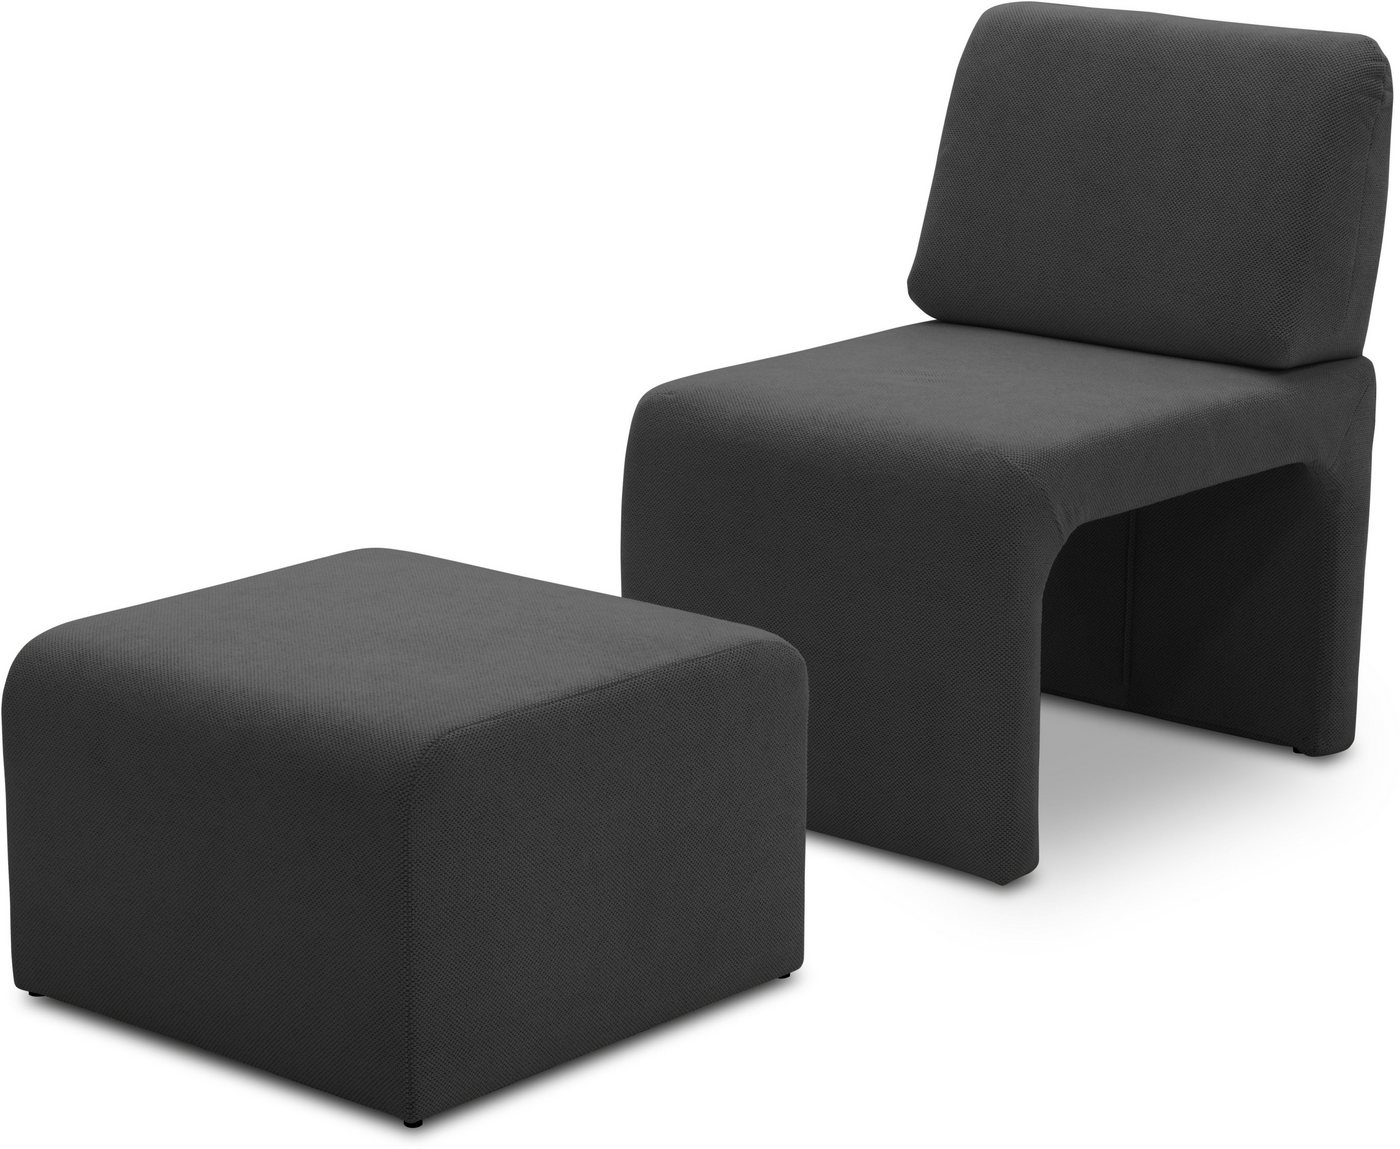 DOMO collection Sessel 700017 ideal für kleine Räume, platzsparend, trotzdem bequem, Hocker unter dem Sessel verstaubar, lieferbar in nur 2 Wochen von DOMO collection